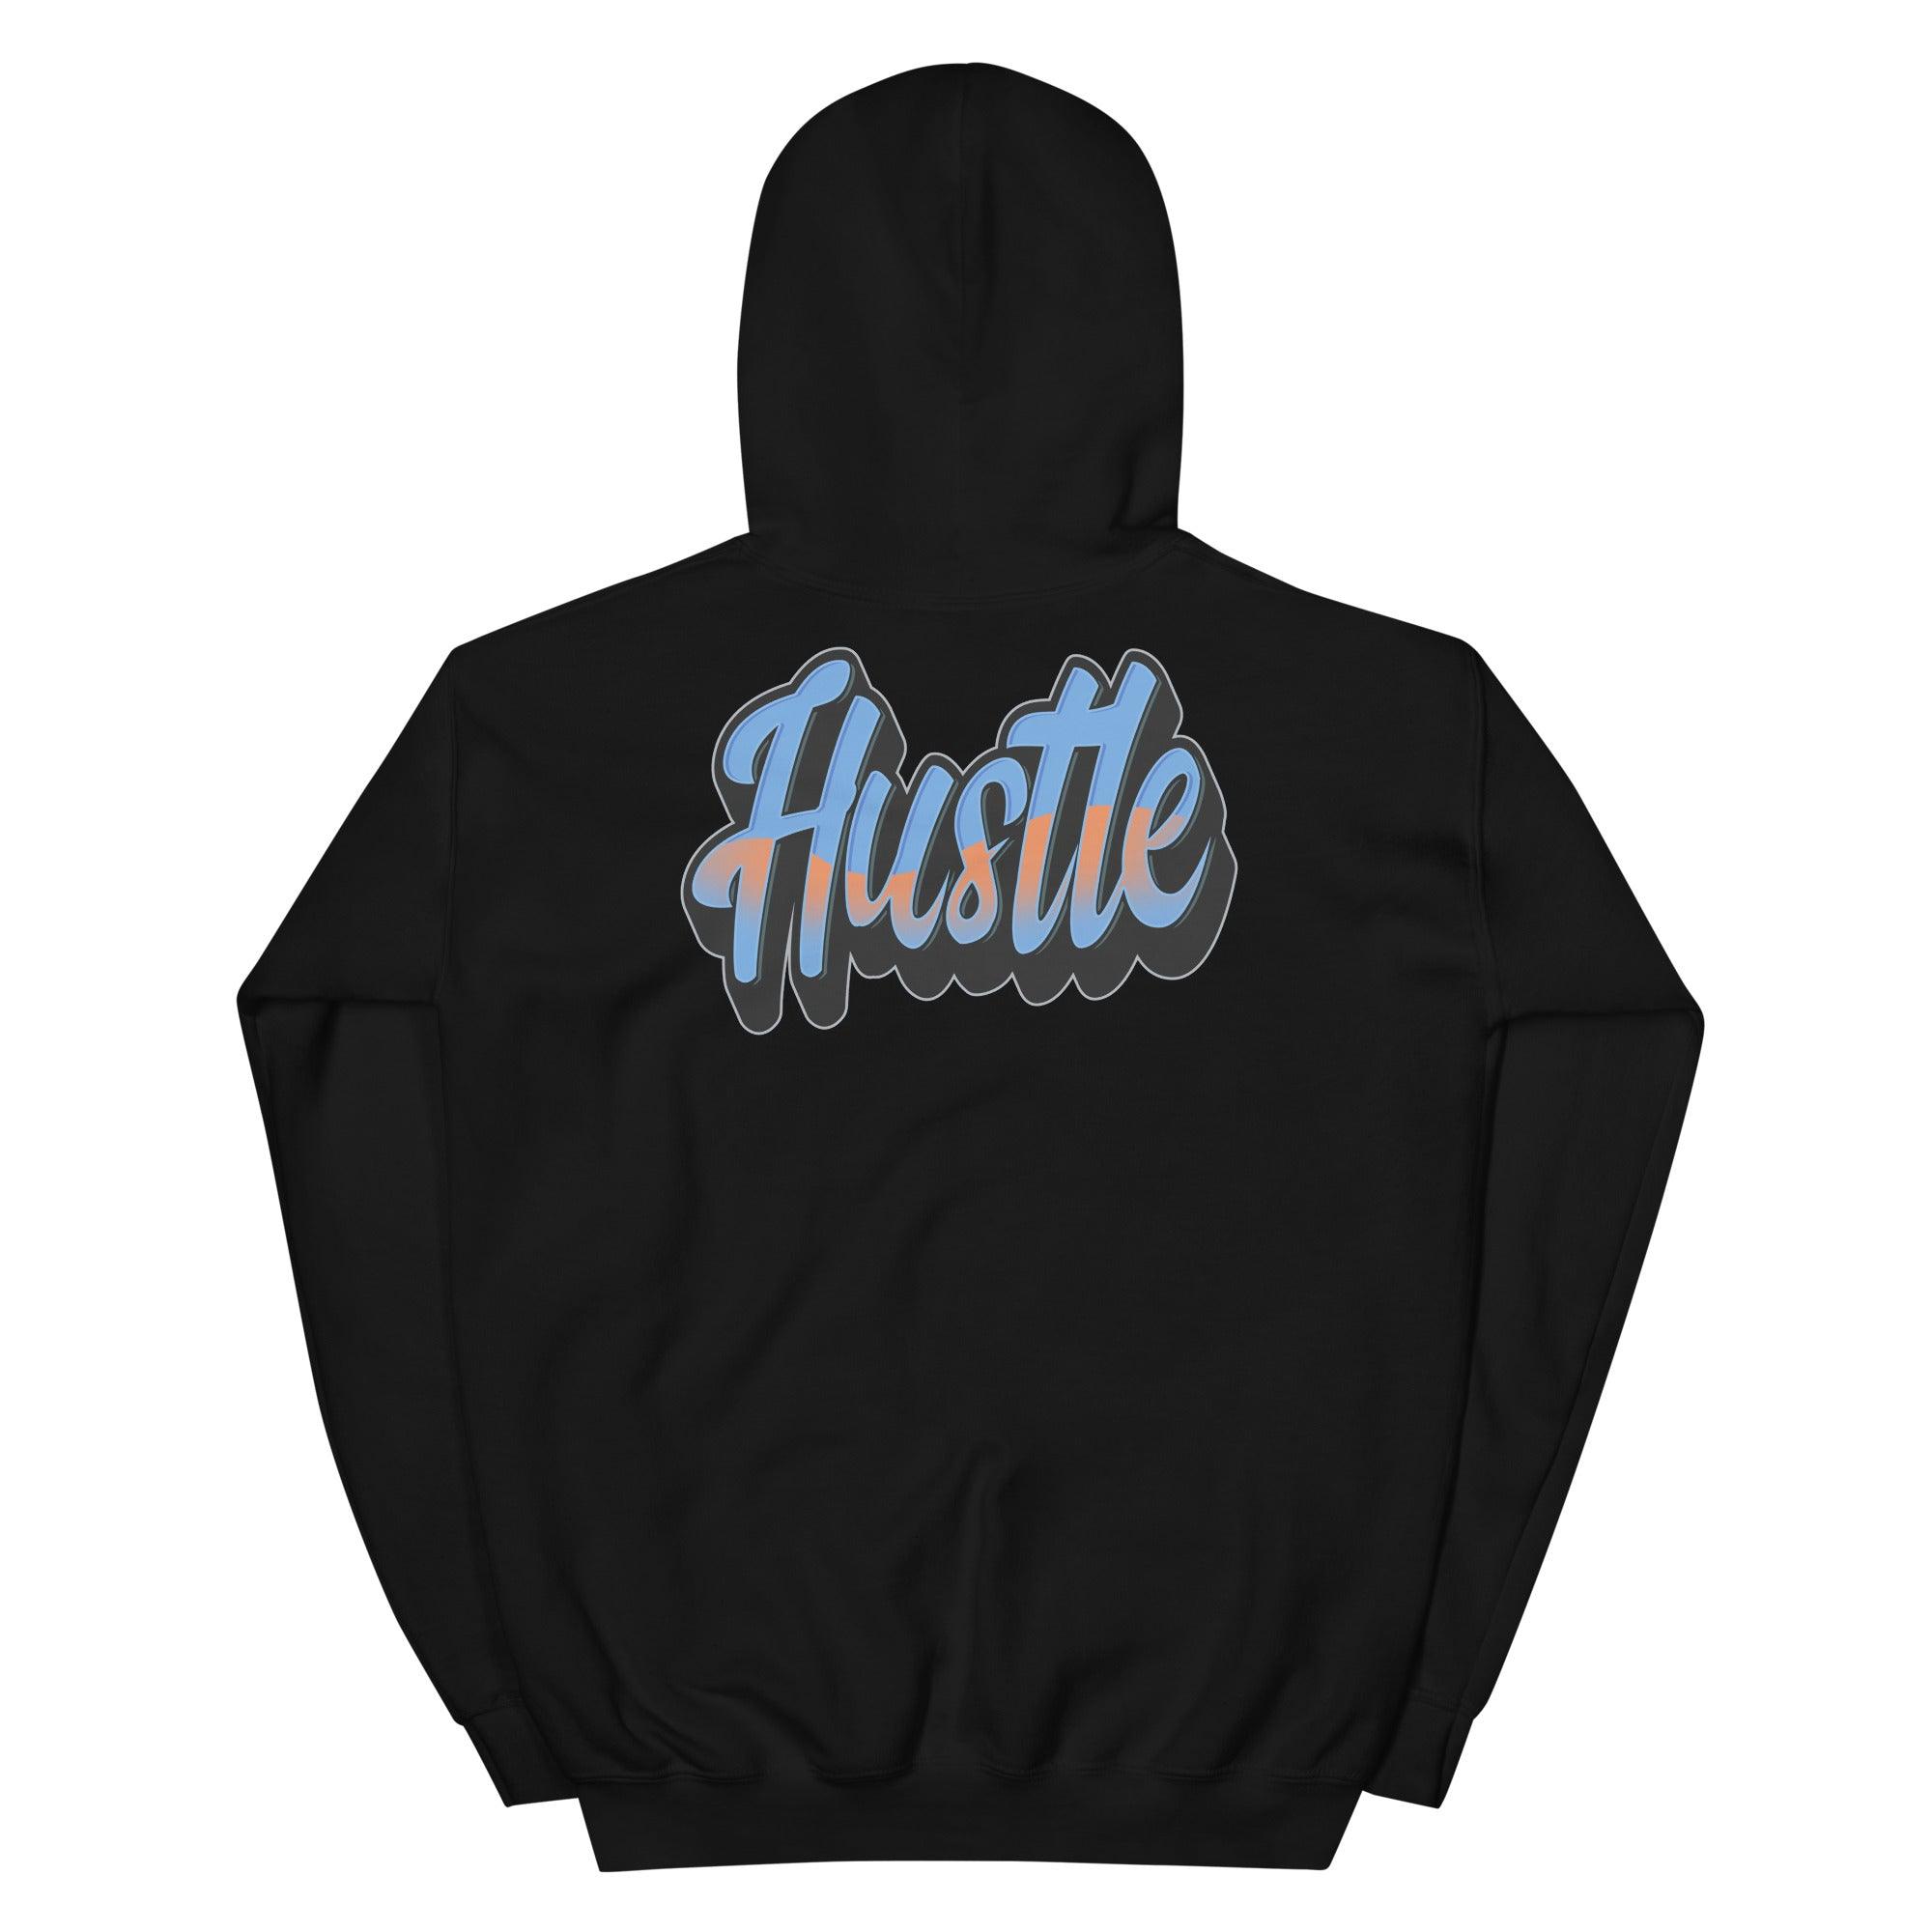 Hustle Sneaker Sweatshirt Yeezy Boost 700s Bright Blue photo